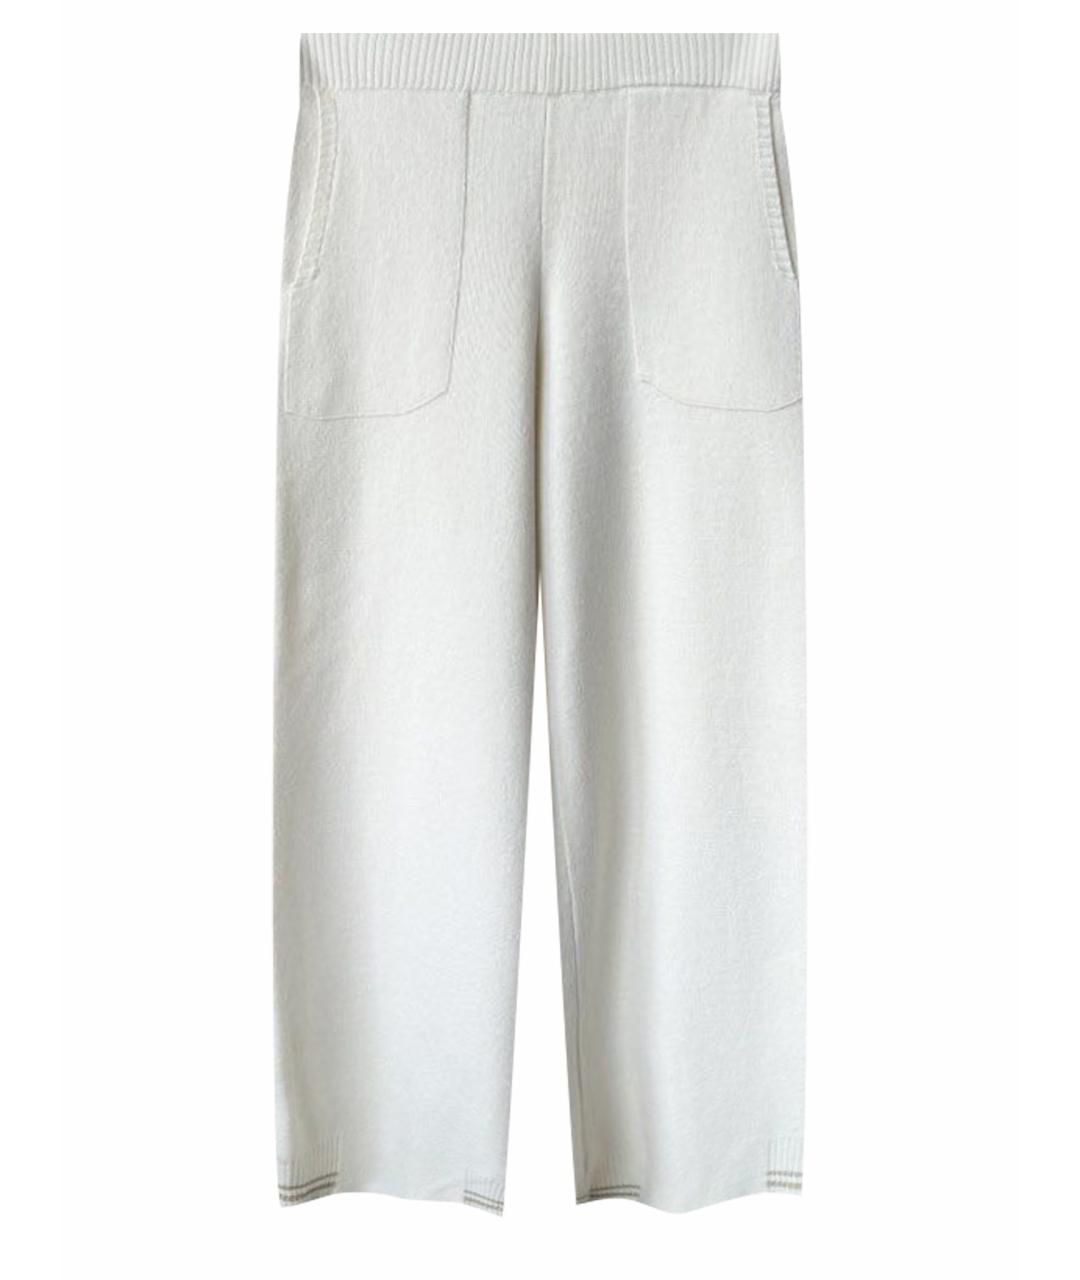 PANICALE Белые кашемировые брюки широкие, фото 1